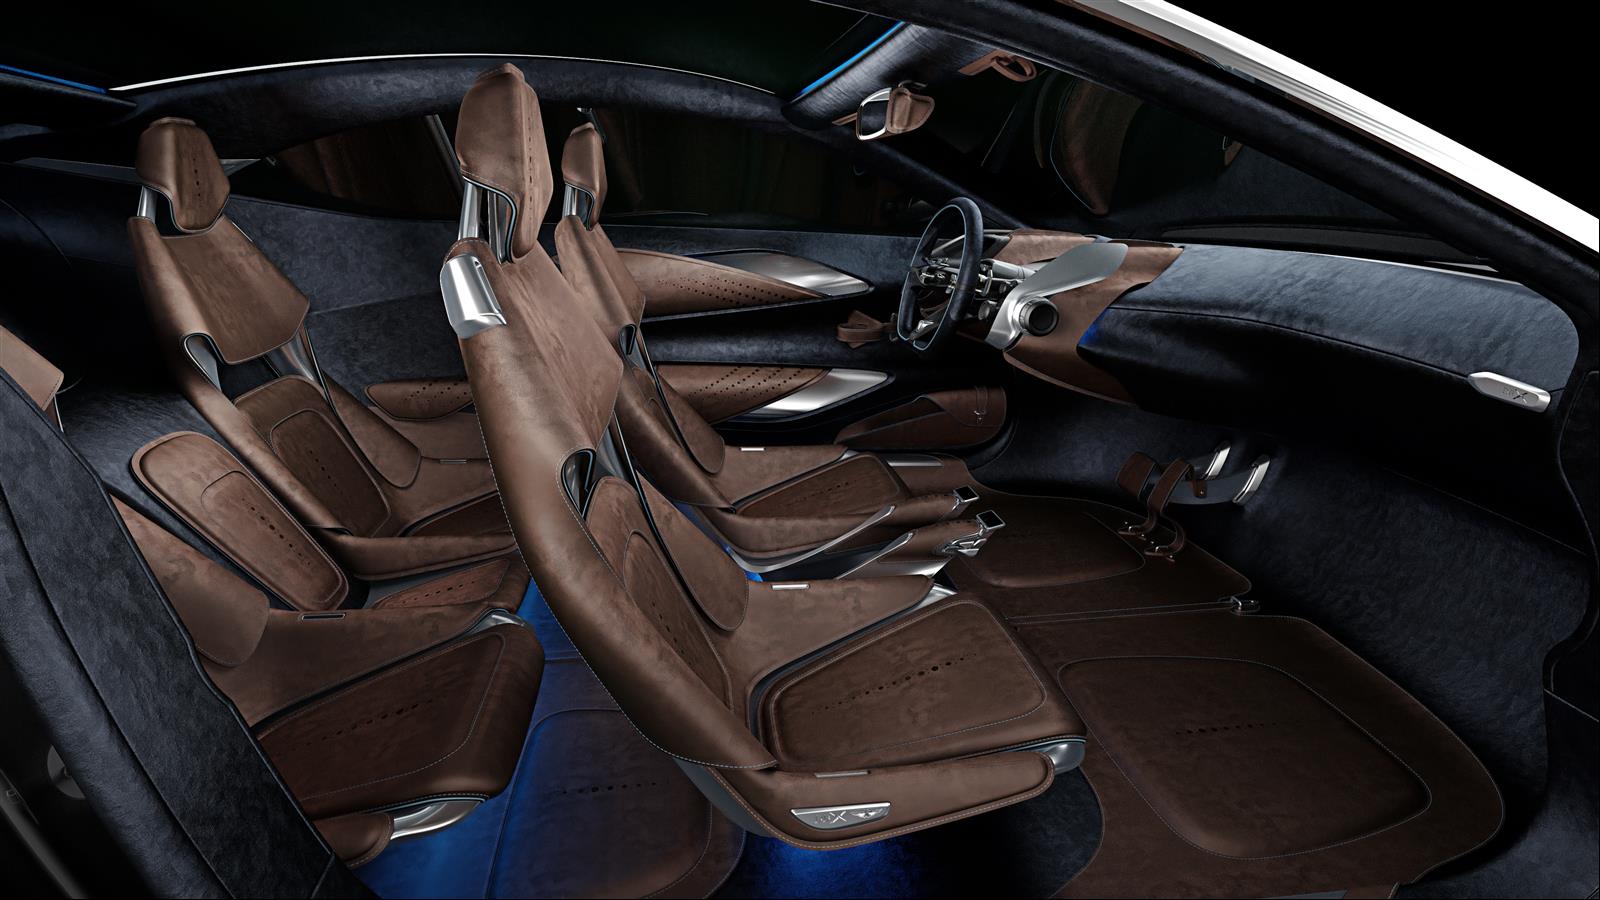 Aston Martin DBX Concept, <i>Aston Martin Lagonda</i>